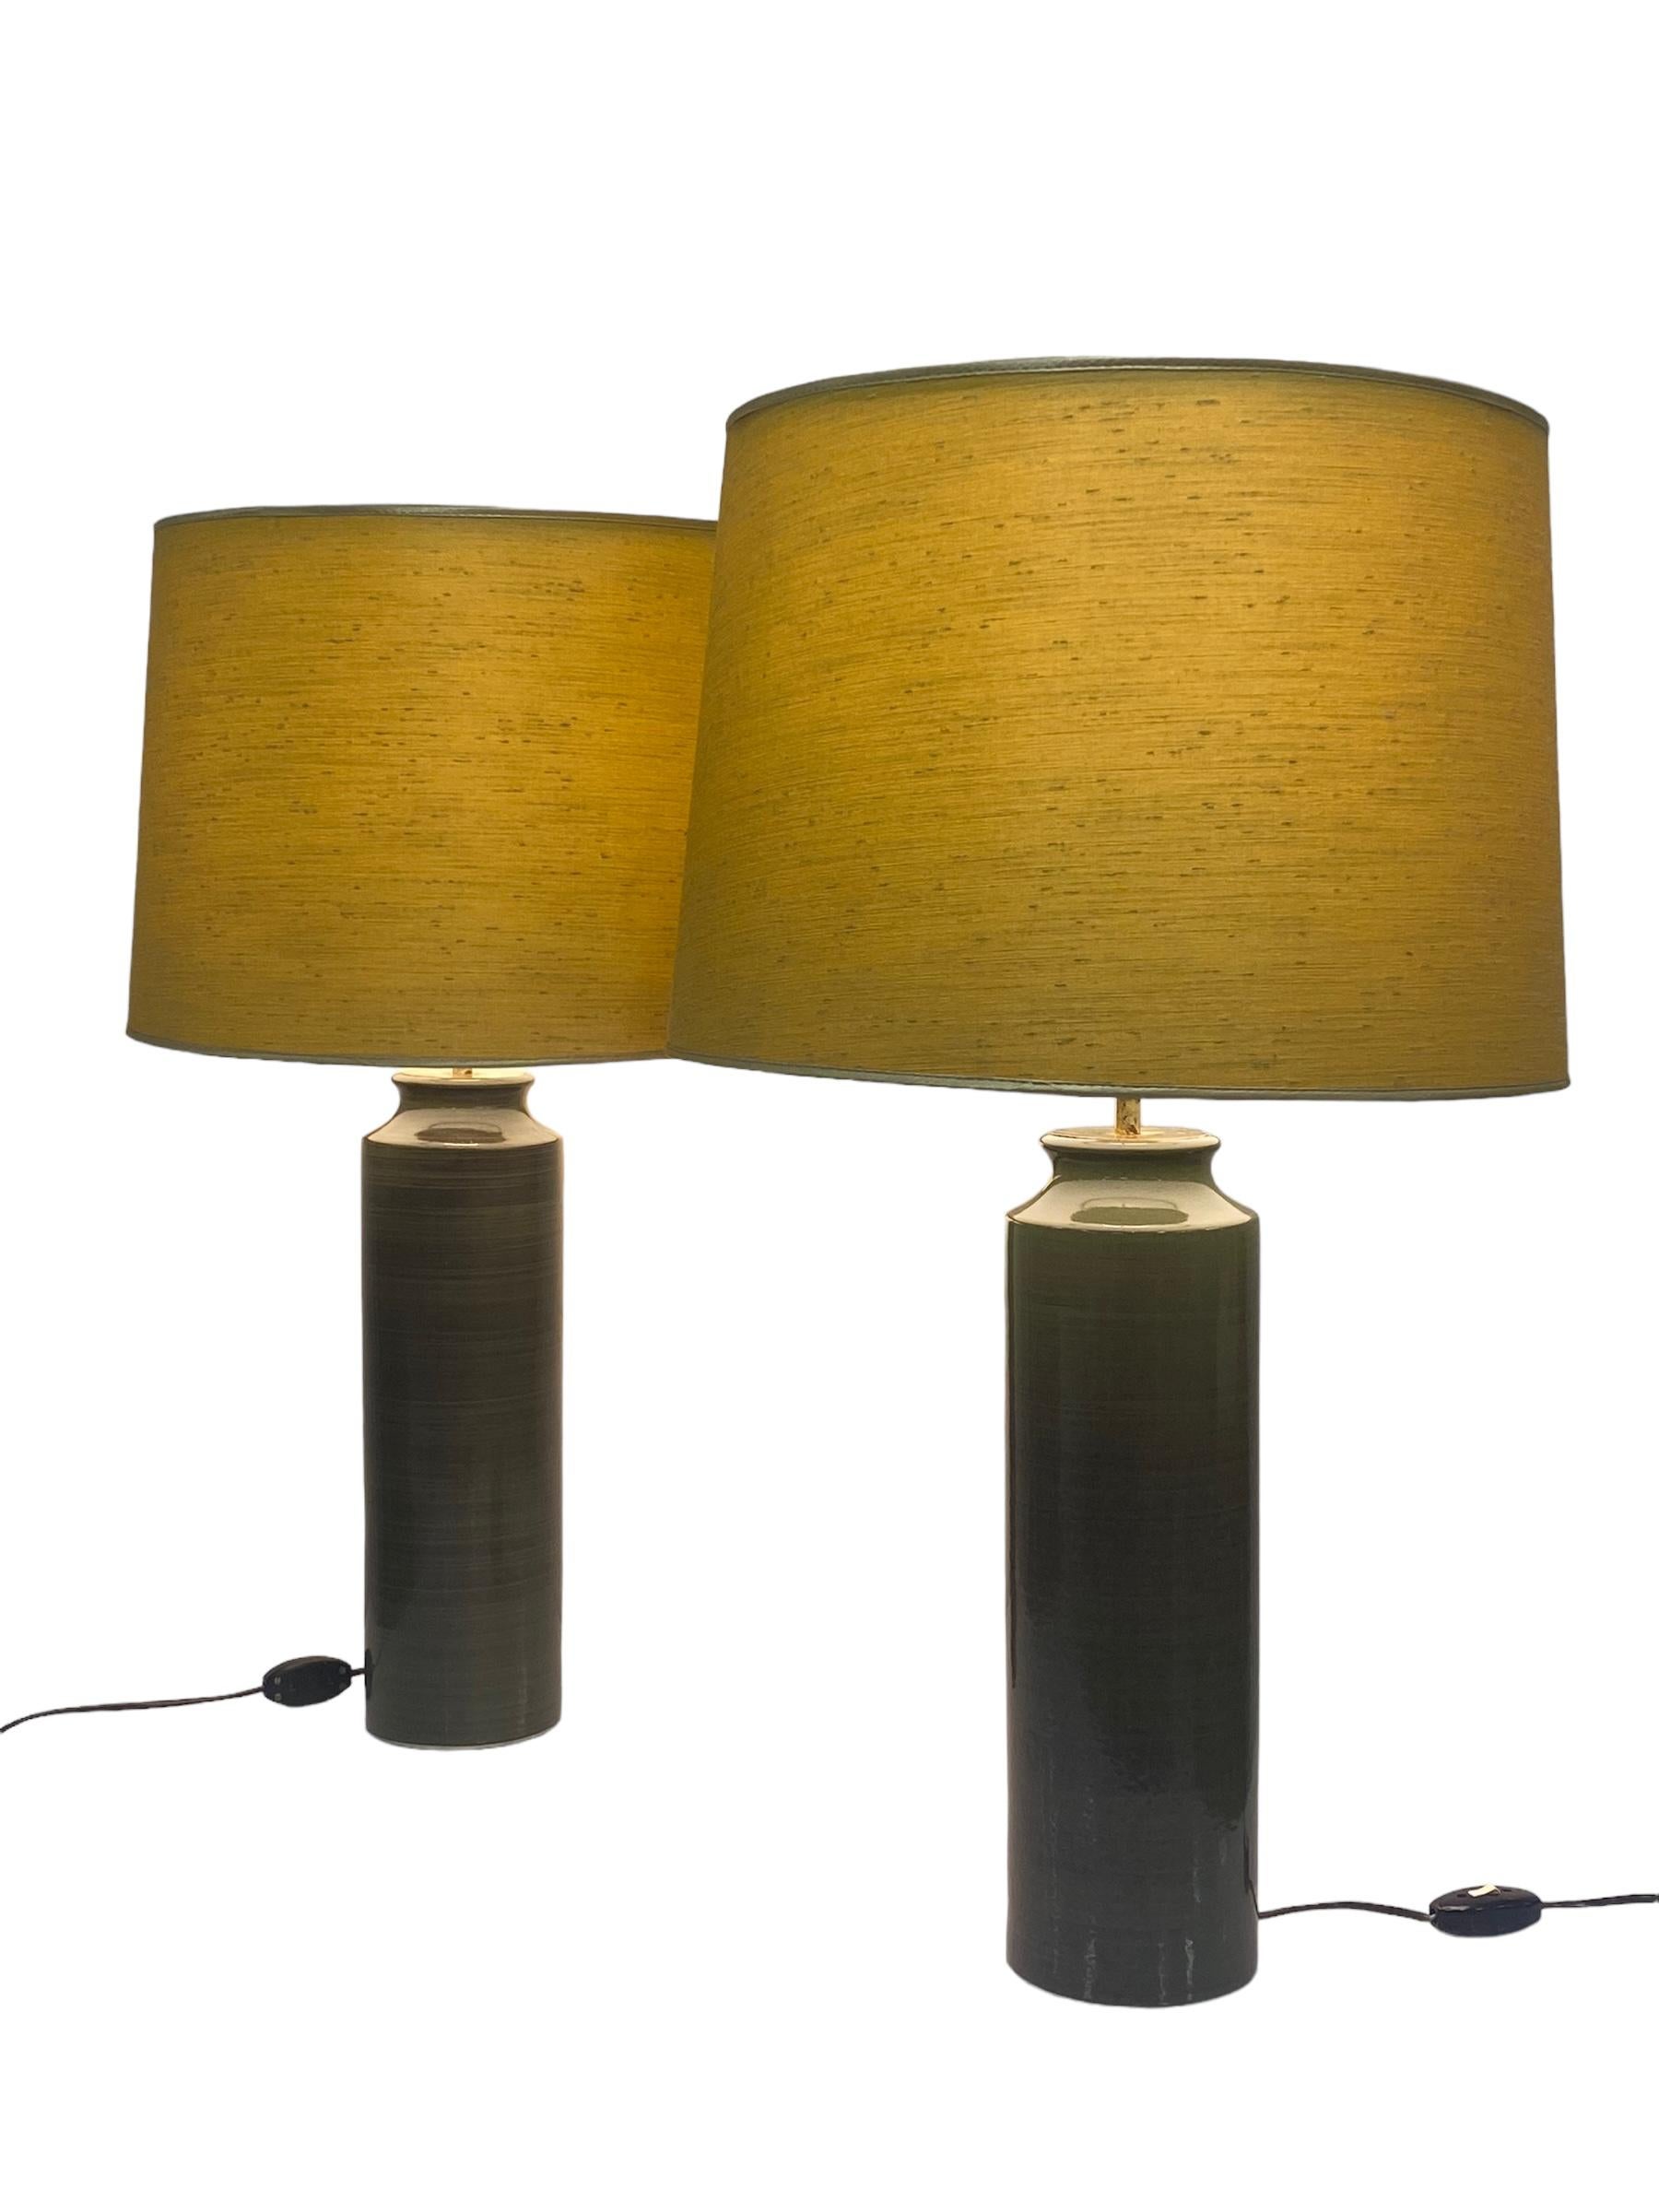 Zwei majestätische Tischlampen, entworfen von Gunvor Olin-Grönqvist für Arabia in den 1950er Jahren. Die Lampen sind sehr groß und ausgeprägt. Mit einem grünlichen Keramikfuß und gelben Stoffschirmen. Beide Lampen tragen die Aufschrift 